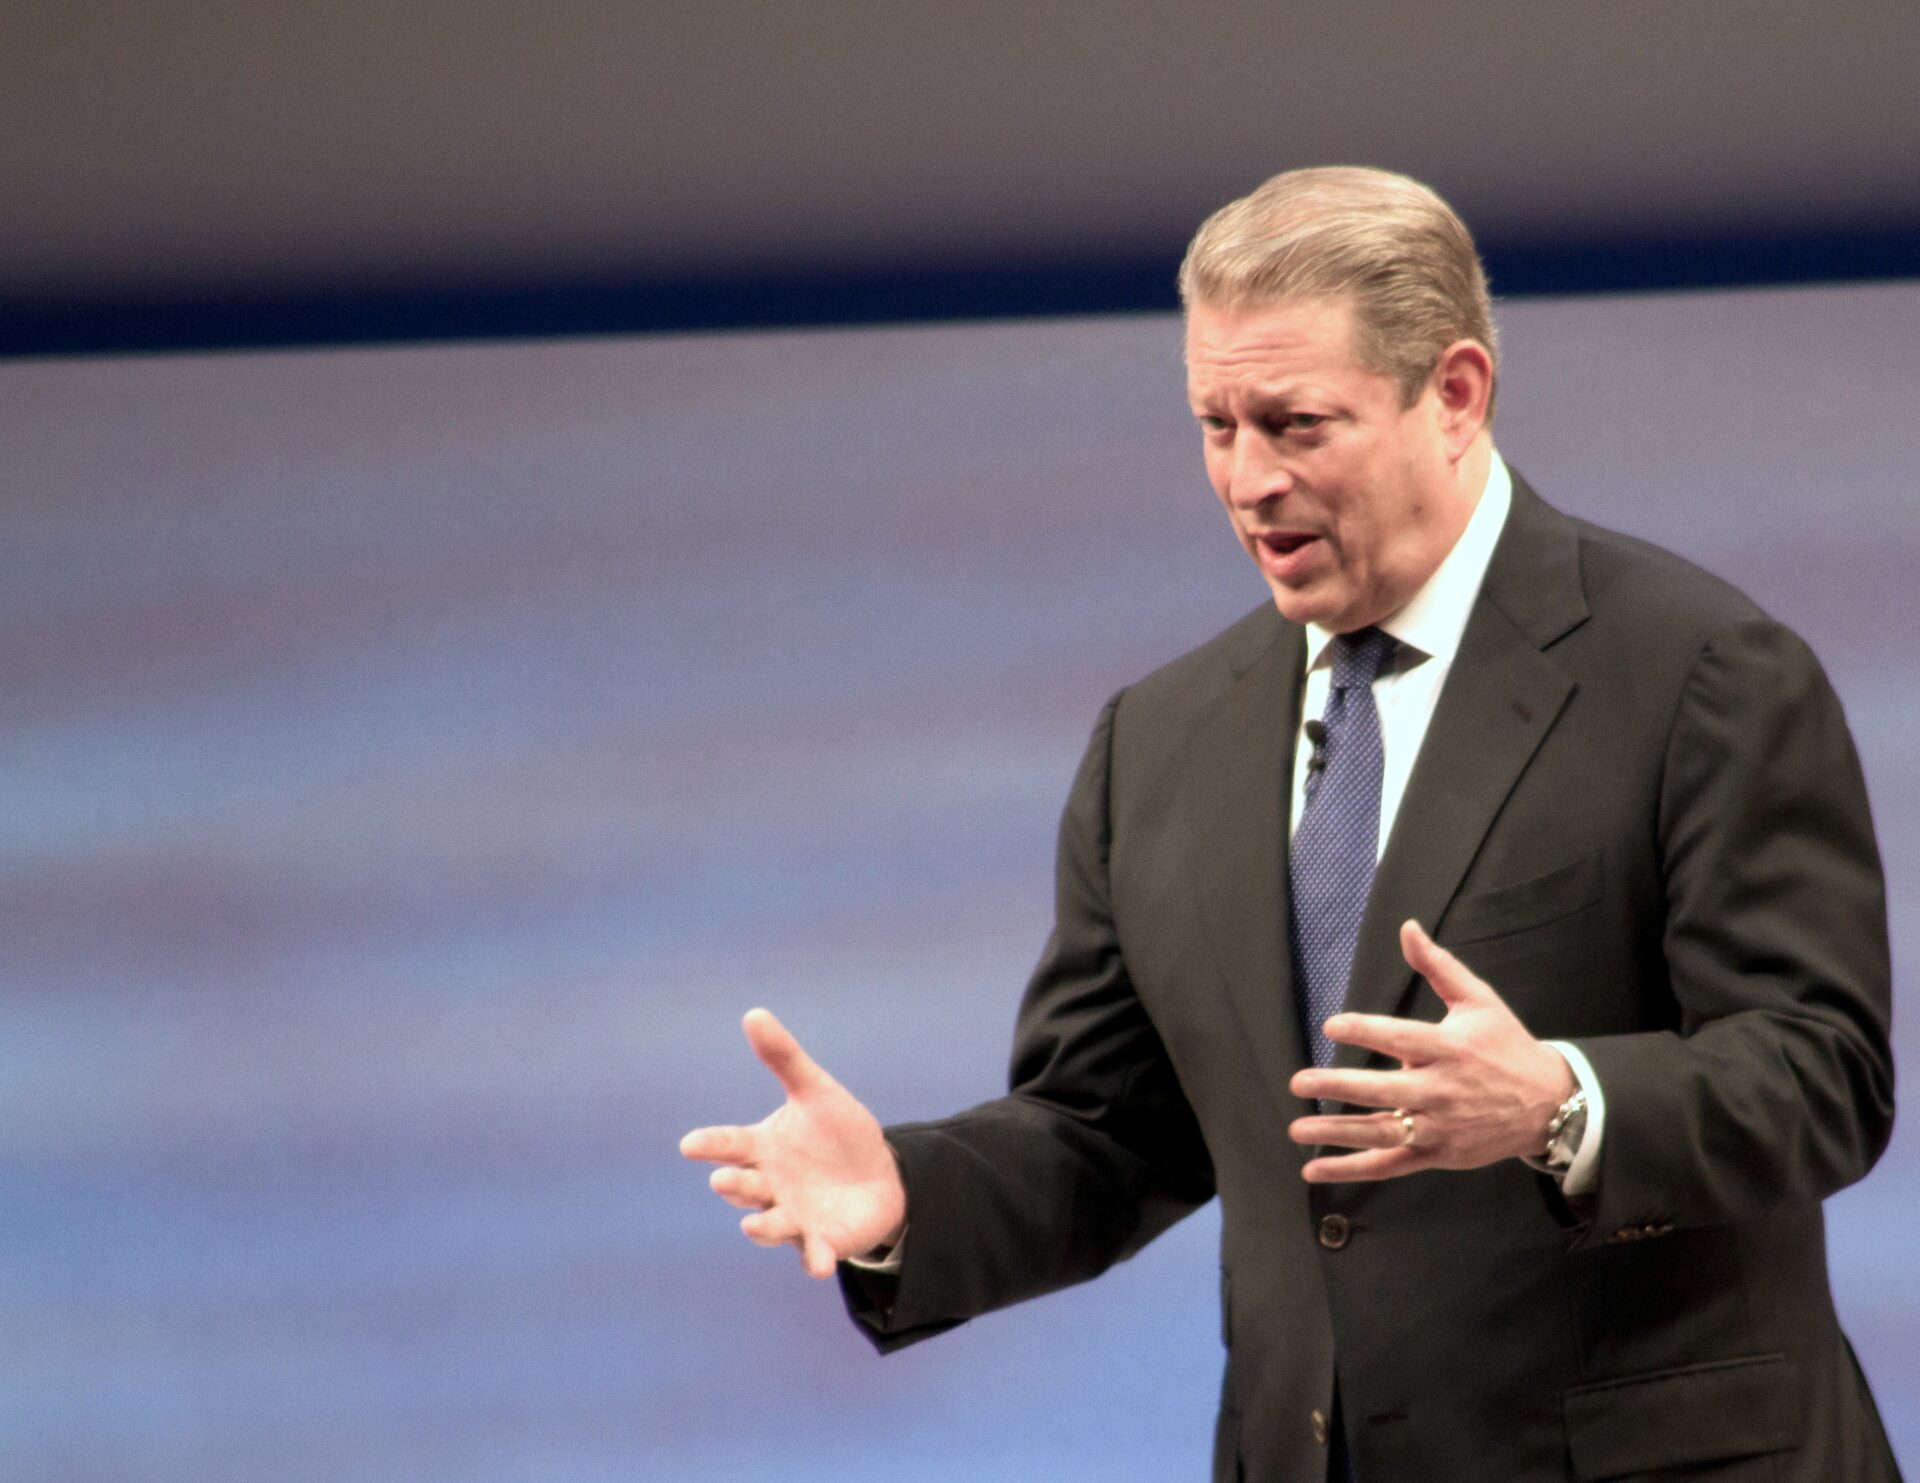 Al Gore’s Speech